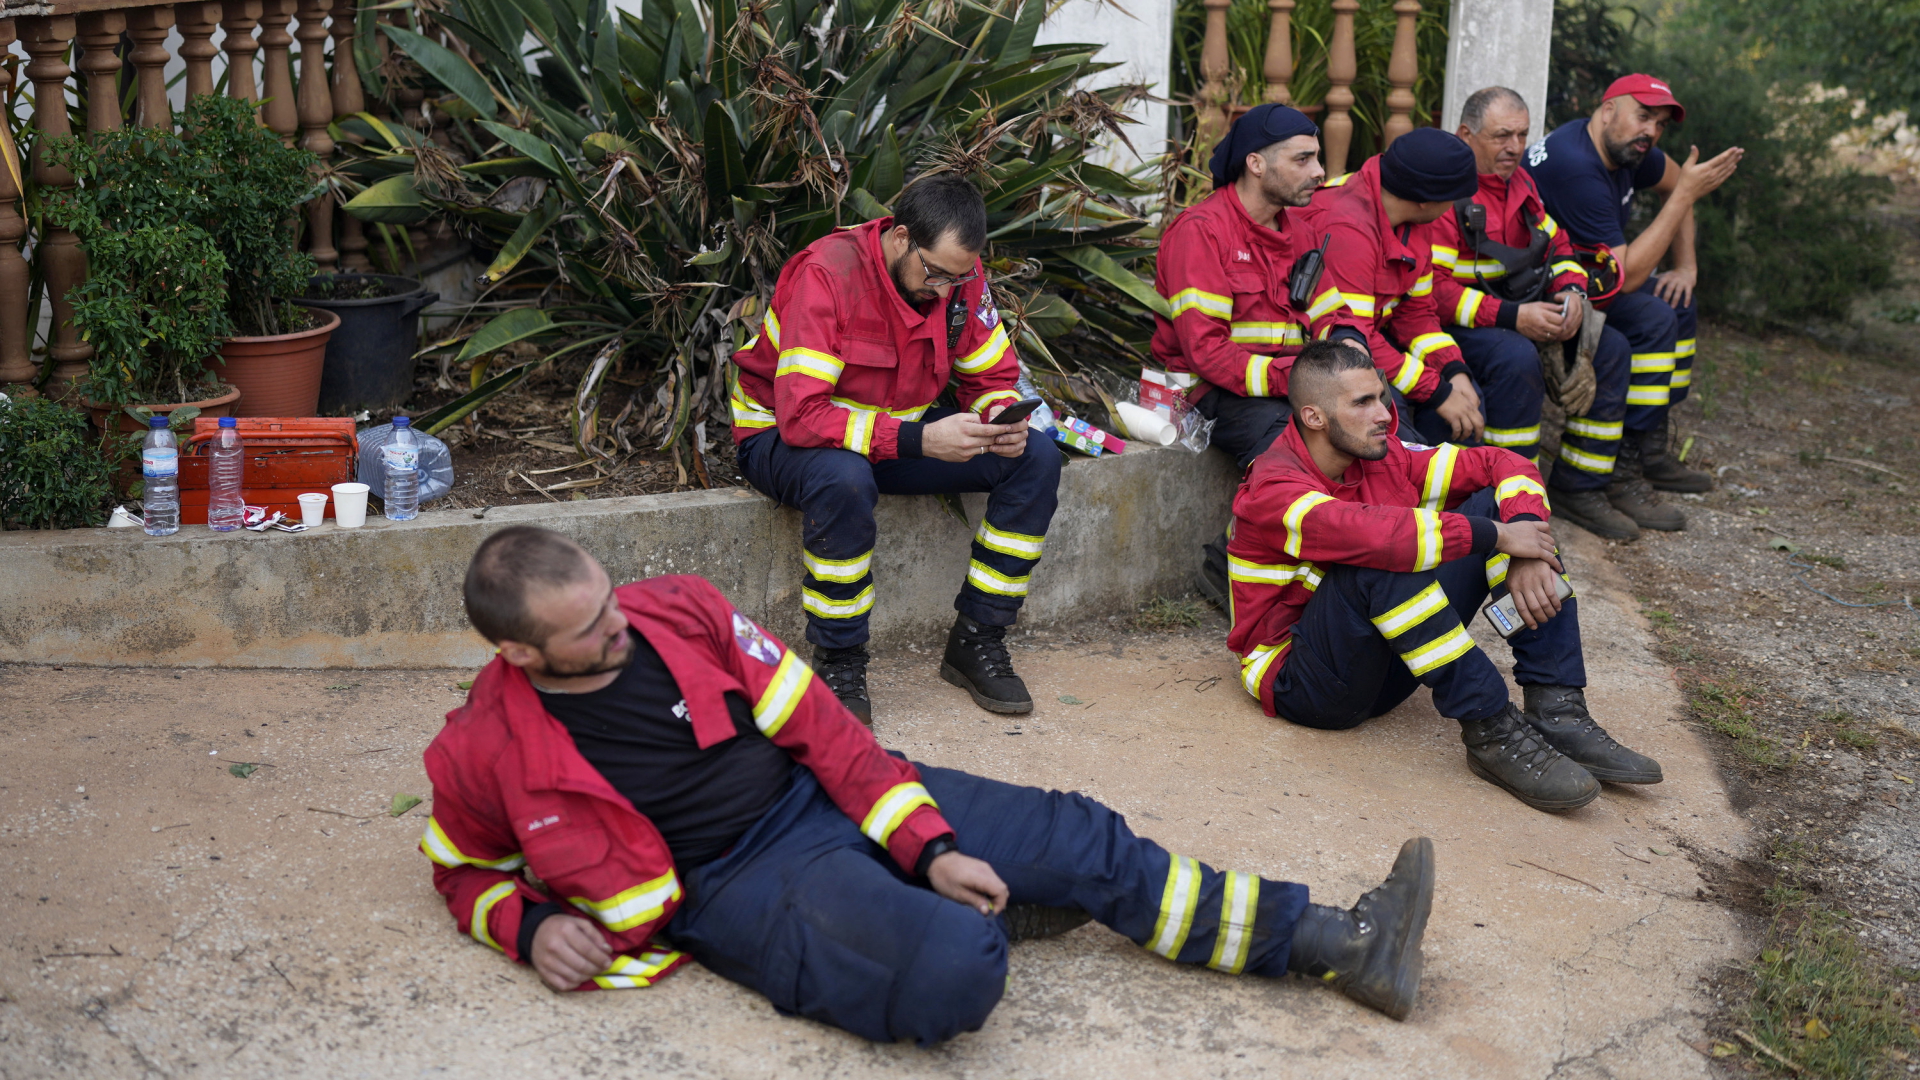 Feuerwehrleute in Portugal. | AP